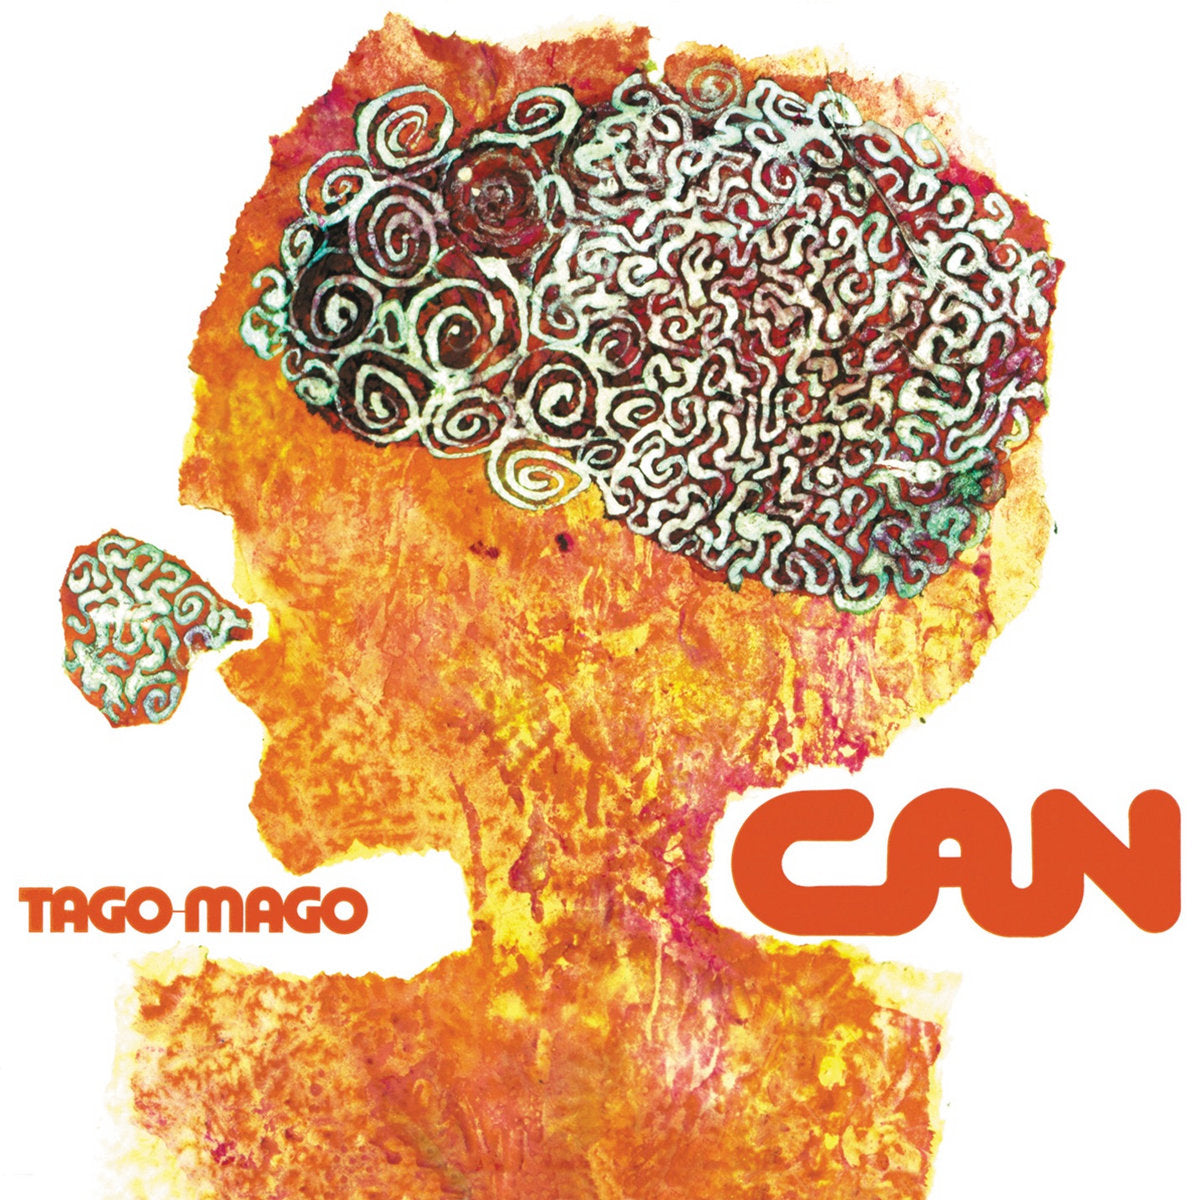 CAN - TAGO MAGO Vinyl 2xLP